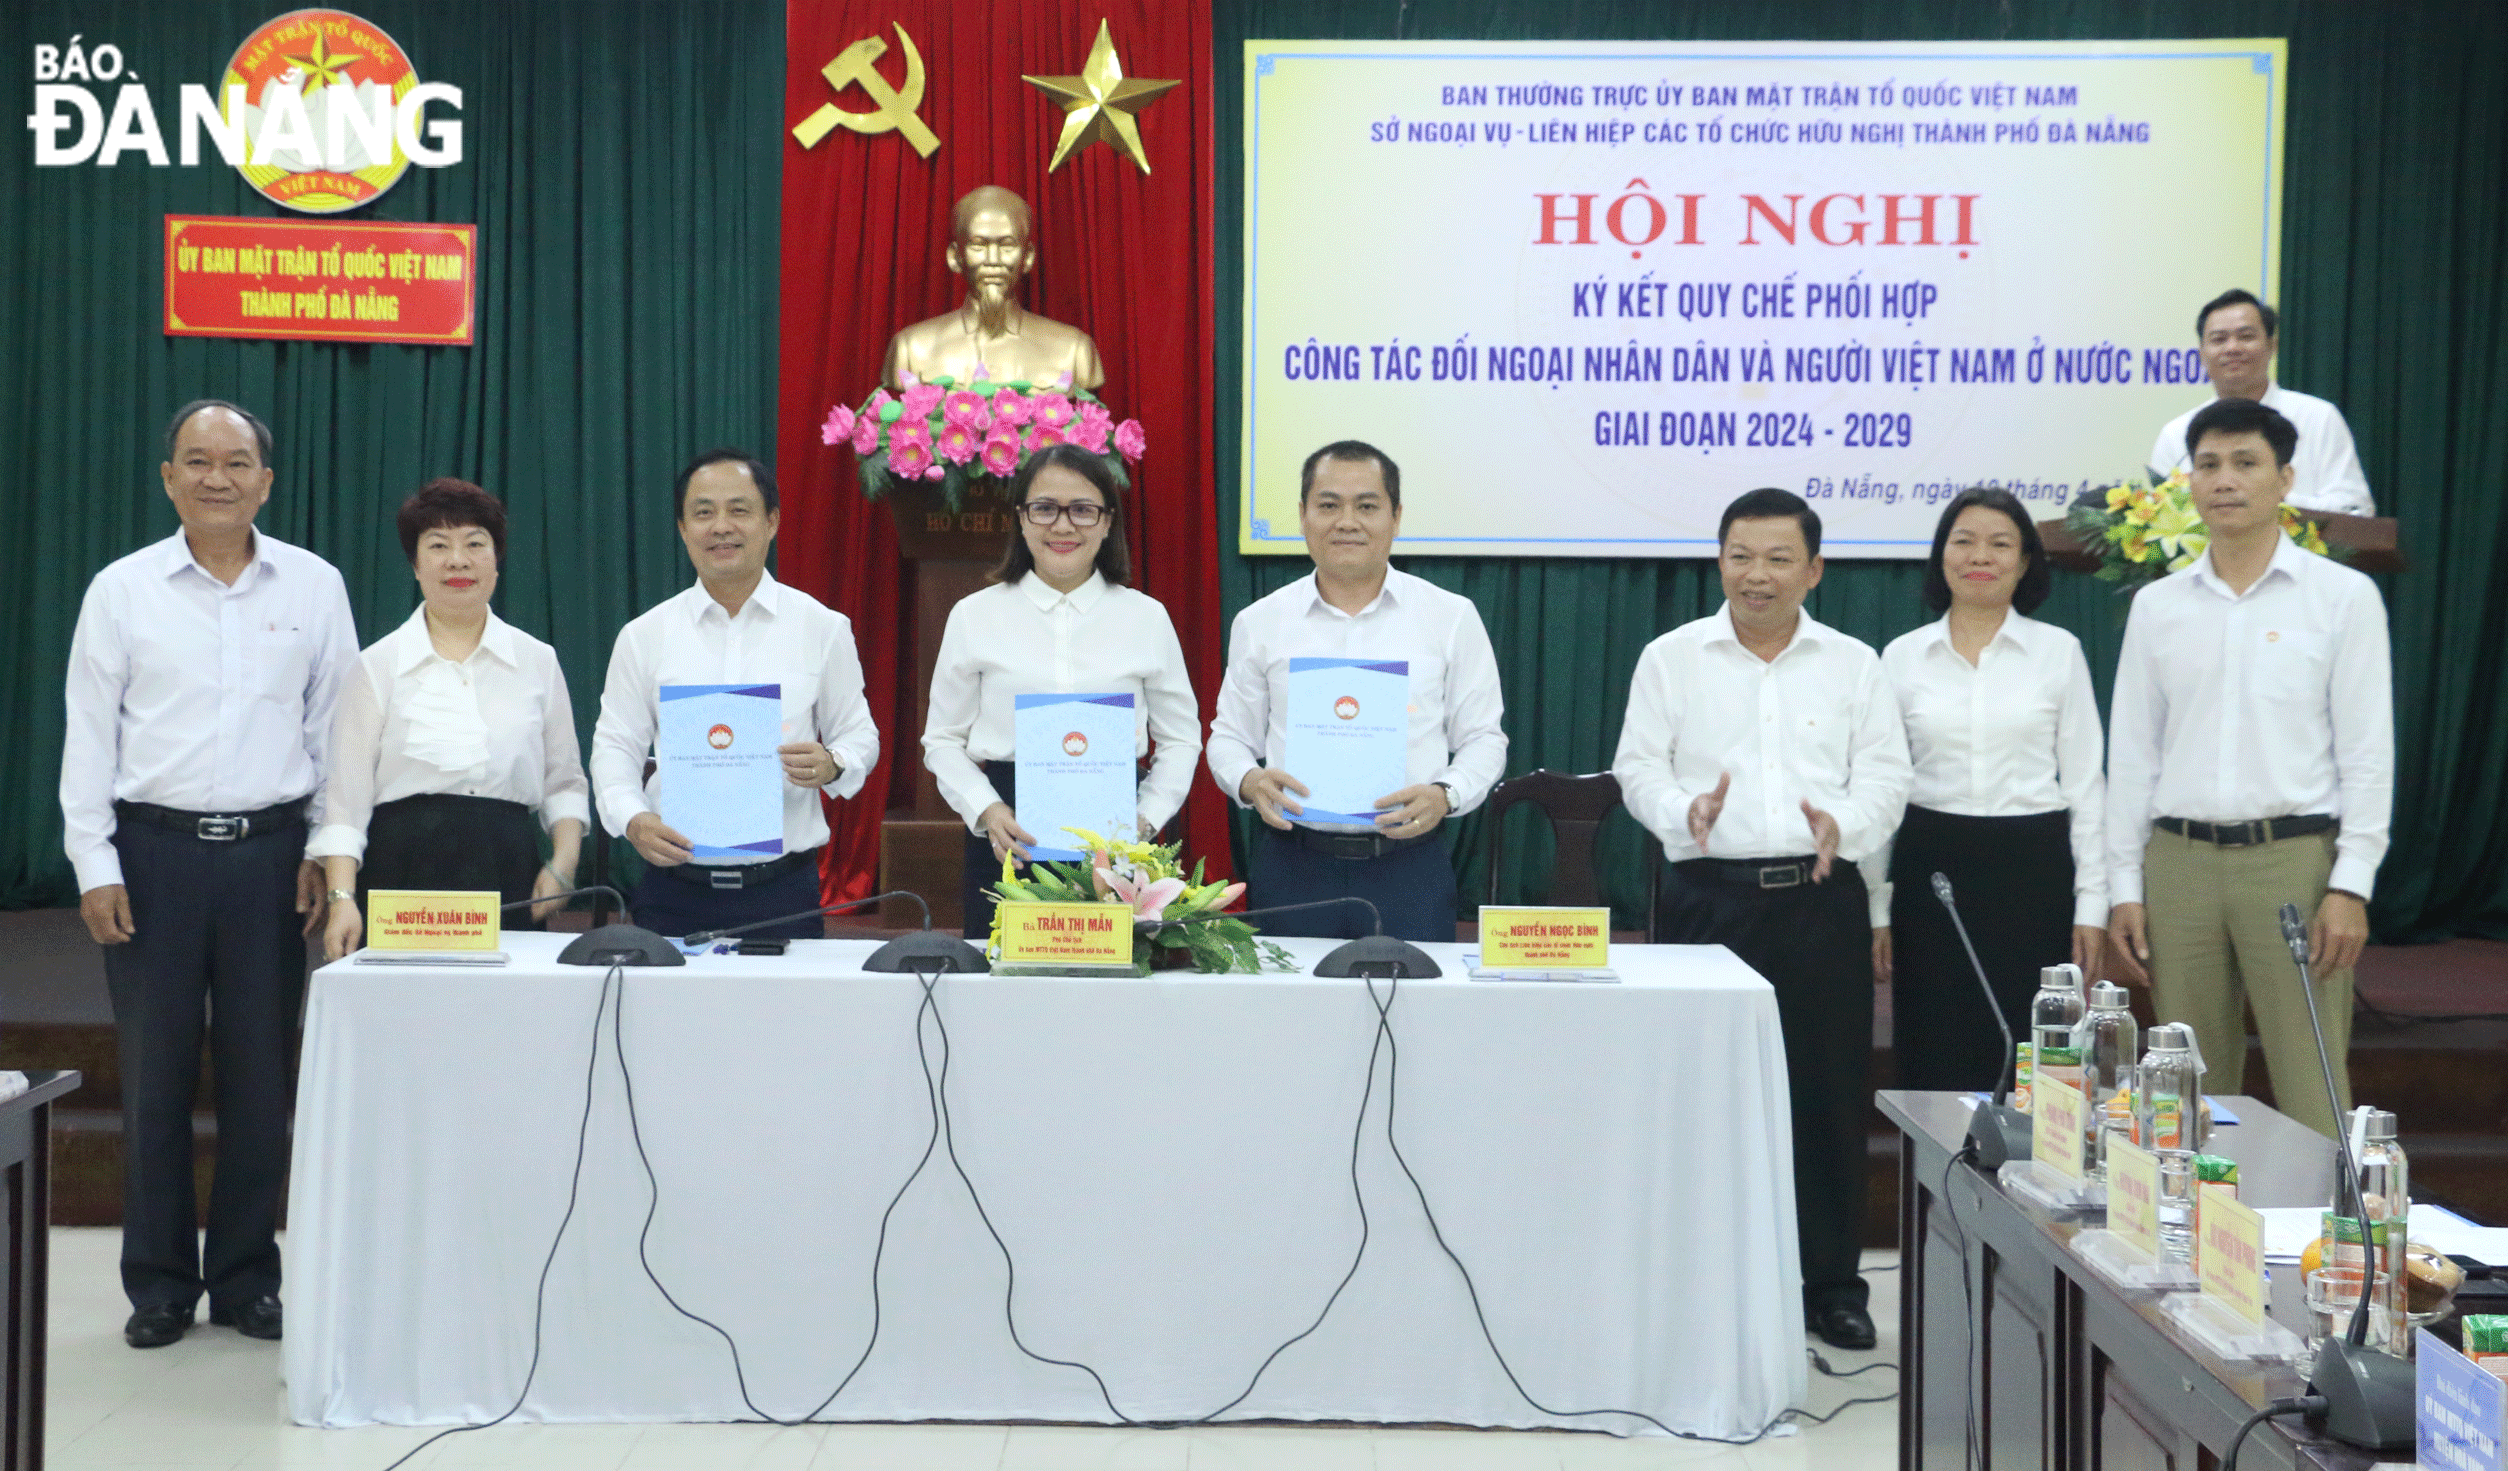 Ủy ban MTTQ Việt Nam thành phố, Sở Ngoại vụ và Liên hiệp các tổ chức hữu nghị thành phố ký kết quy chế phối hợp thực hiện công tác đối ngoại nhân dân và công tác người Việt Nam ở nước ngoài giai đoạn 2024 - 2029. Ảnh: T.P	